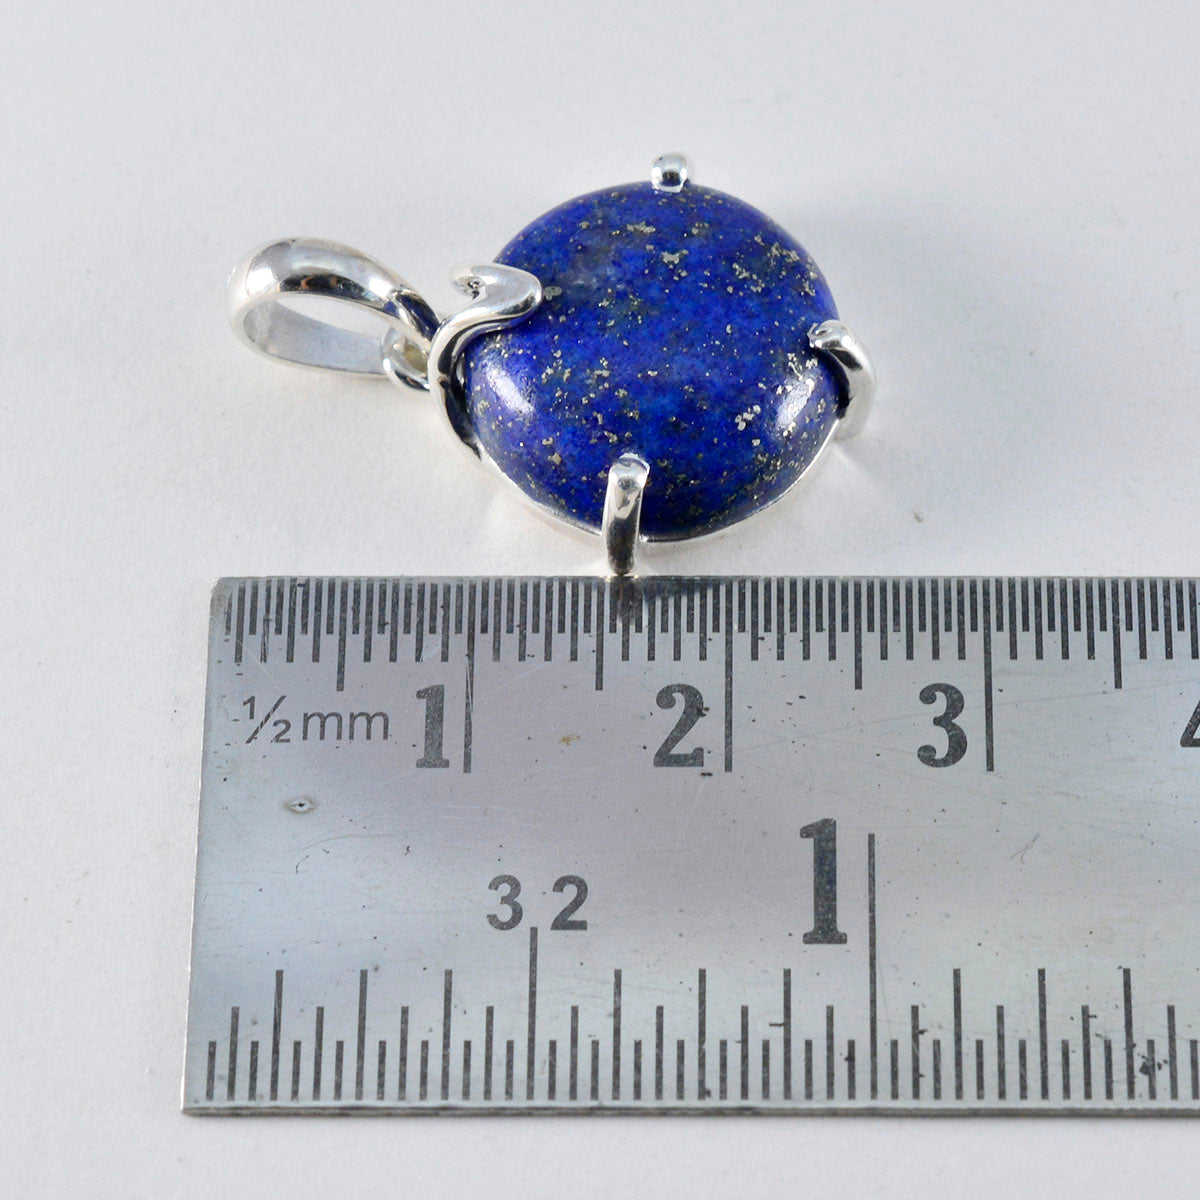 Riyo Winsome Edelsteen Ronde Cabochon Nevy Blue Lapis Lazuli Sterling zilveren hanger cadeau voor handgemaakt